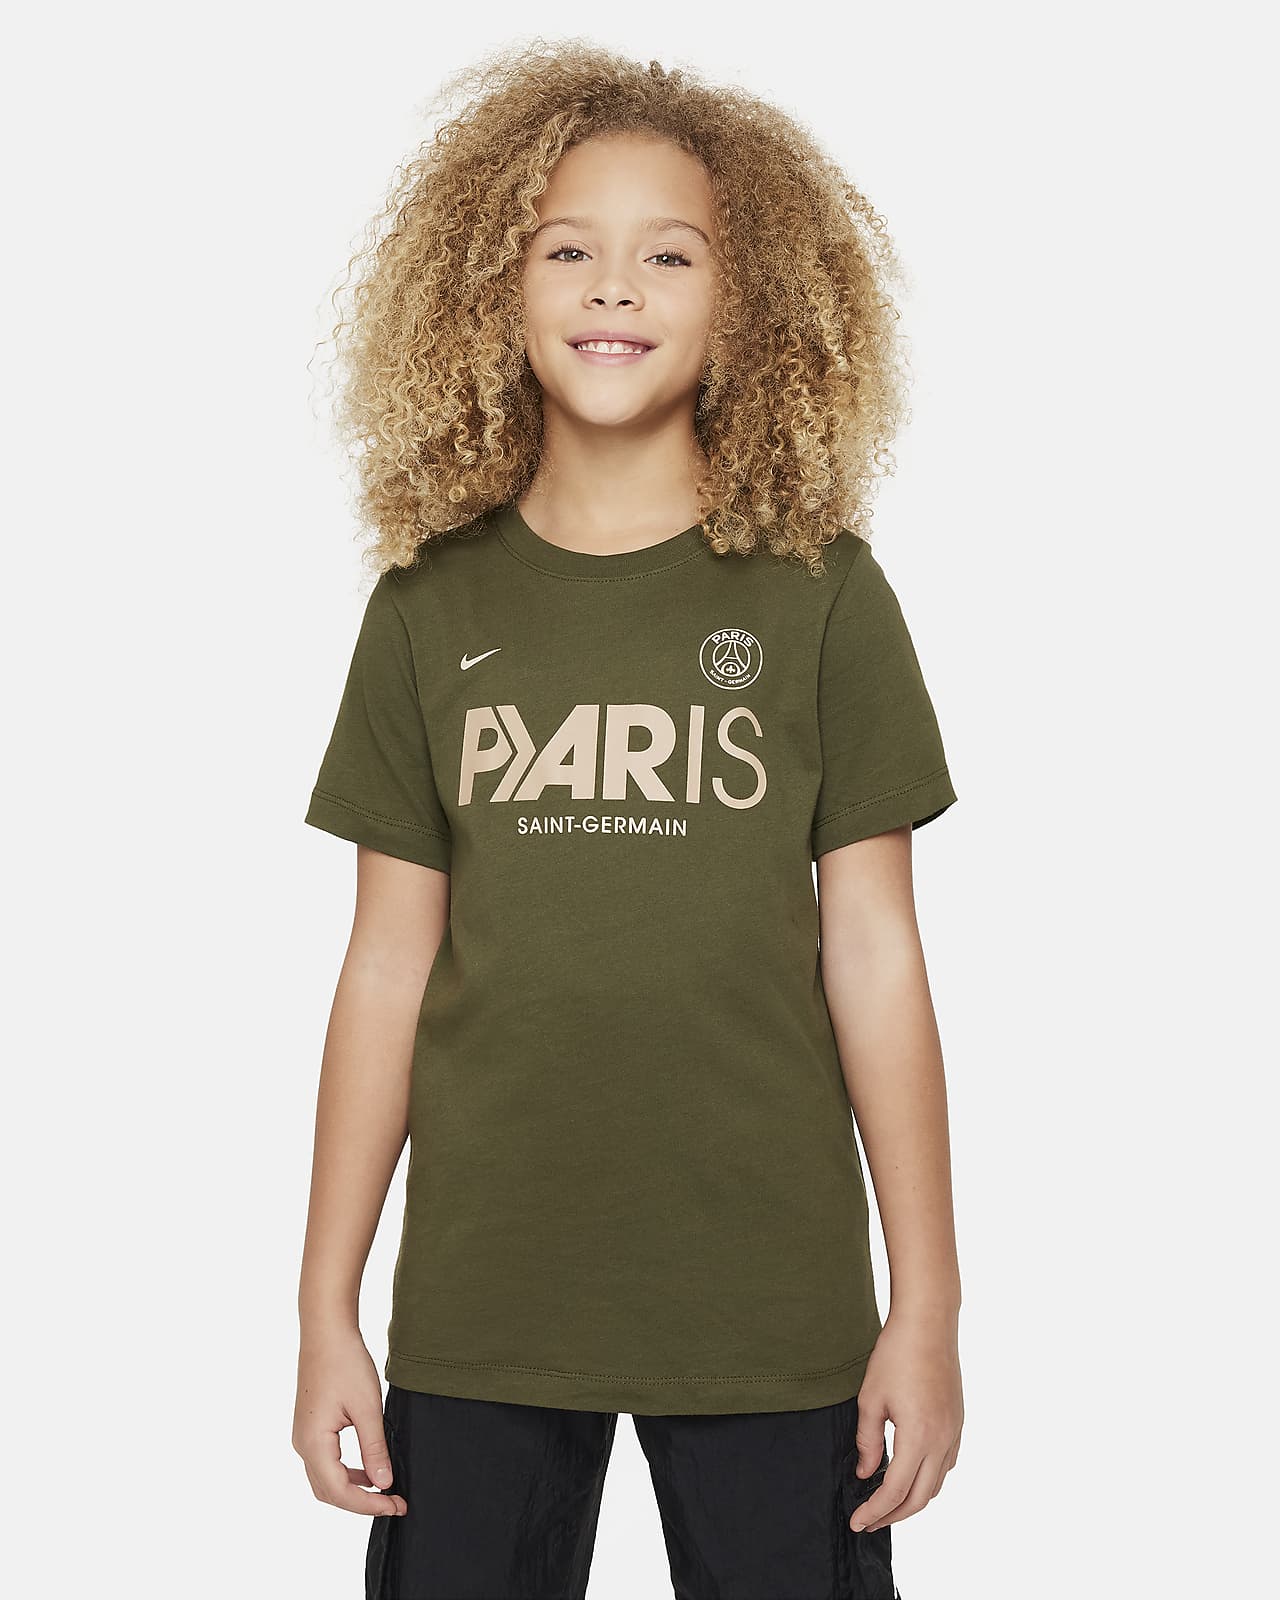 Paris Saint-Germain Mercurial Big Kids' Nike Soccer T-Shirt